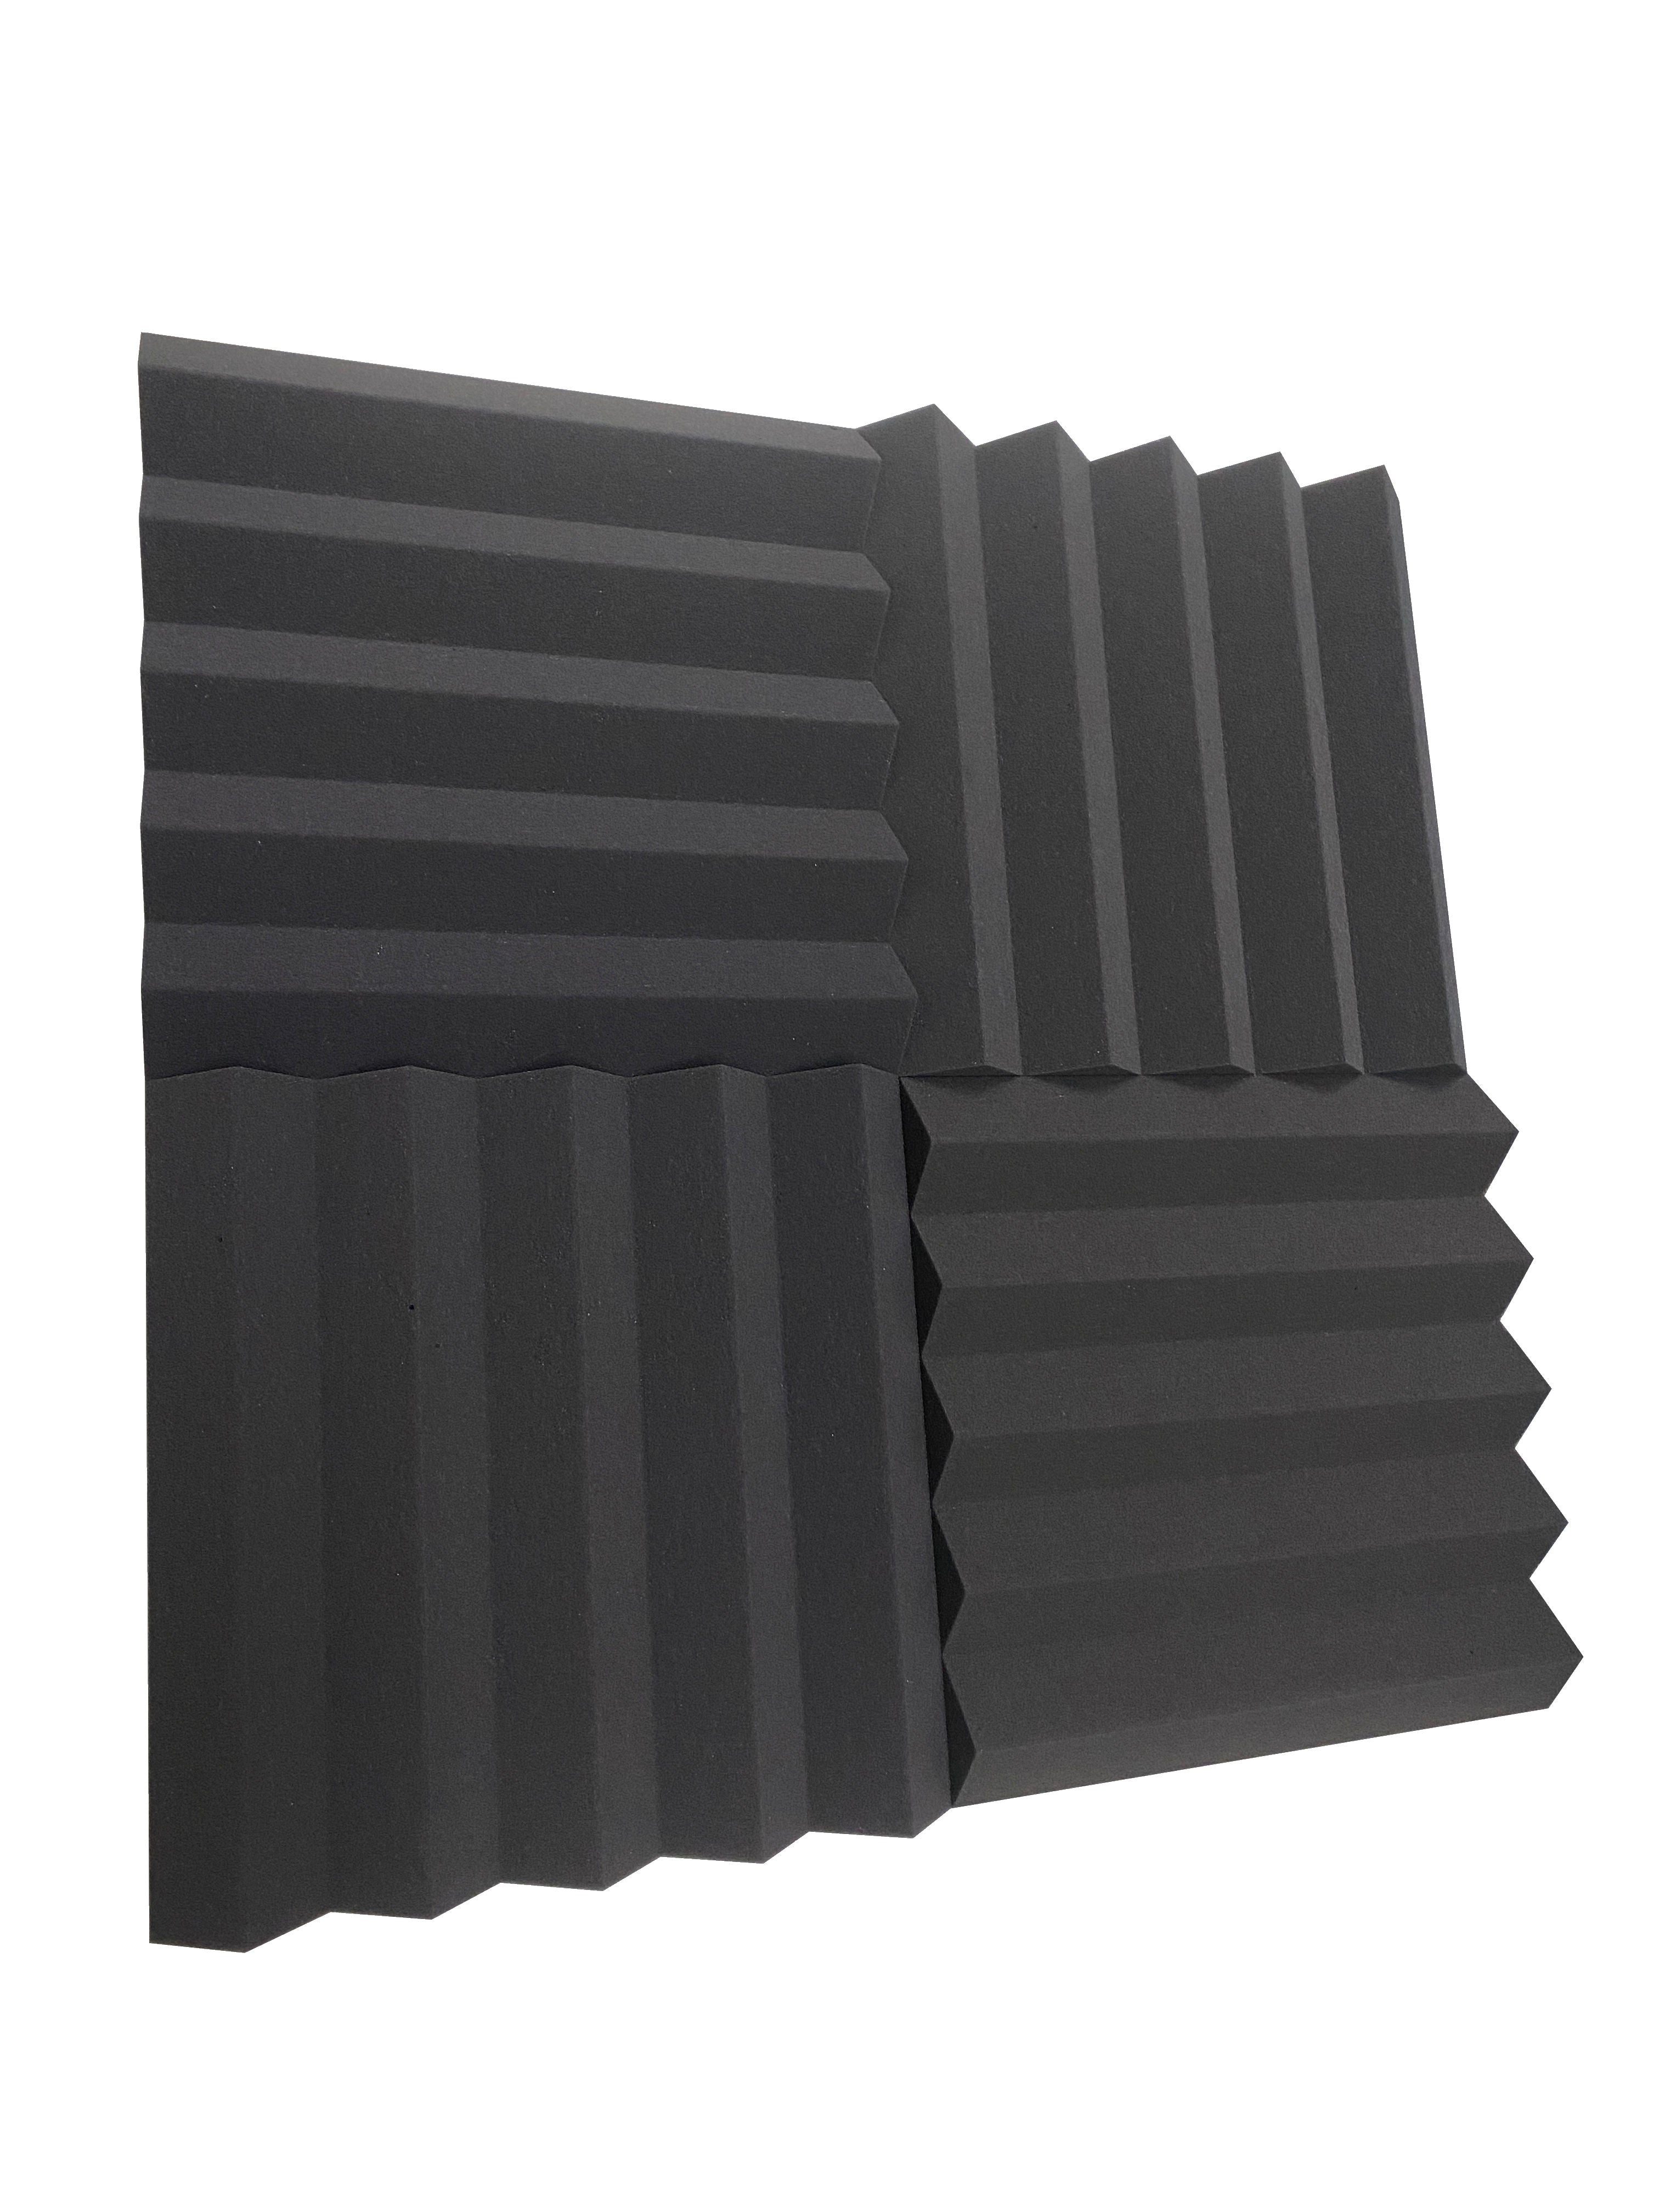 Wedge PRO 15" Acoustic Studio Foam Tile Pack - 24 Tiles, 3.48qm Coverage